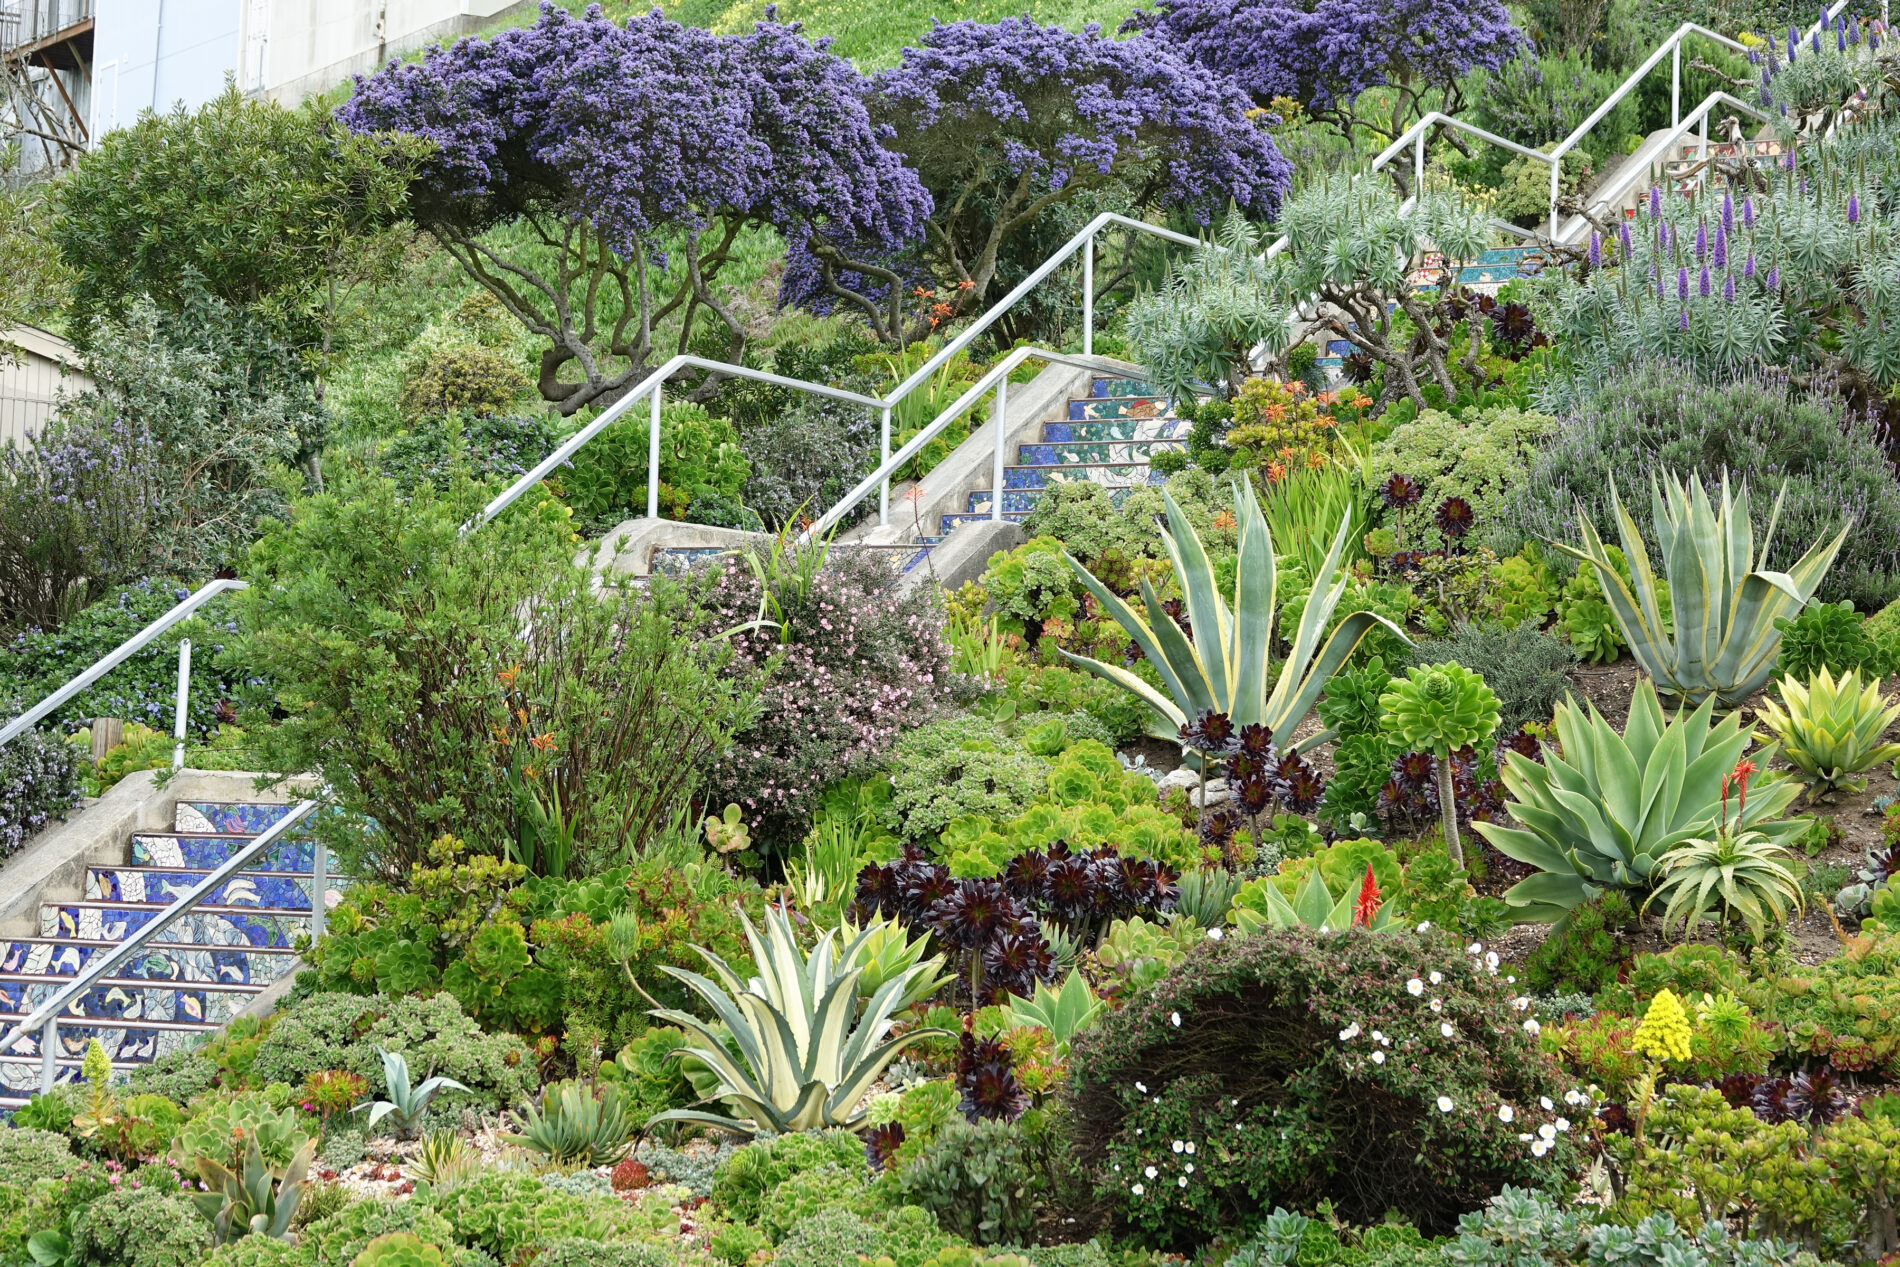 The garden surrounding the Moraga Steps in San Francisco.